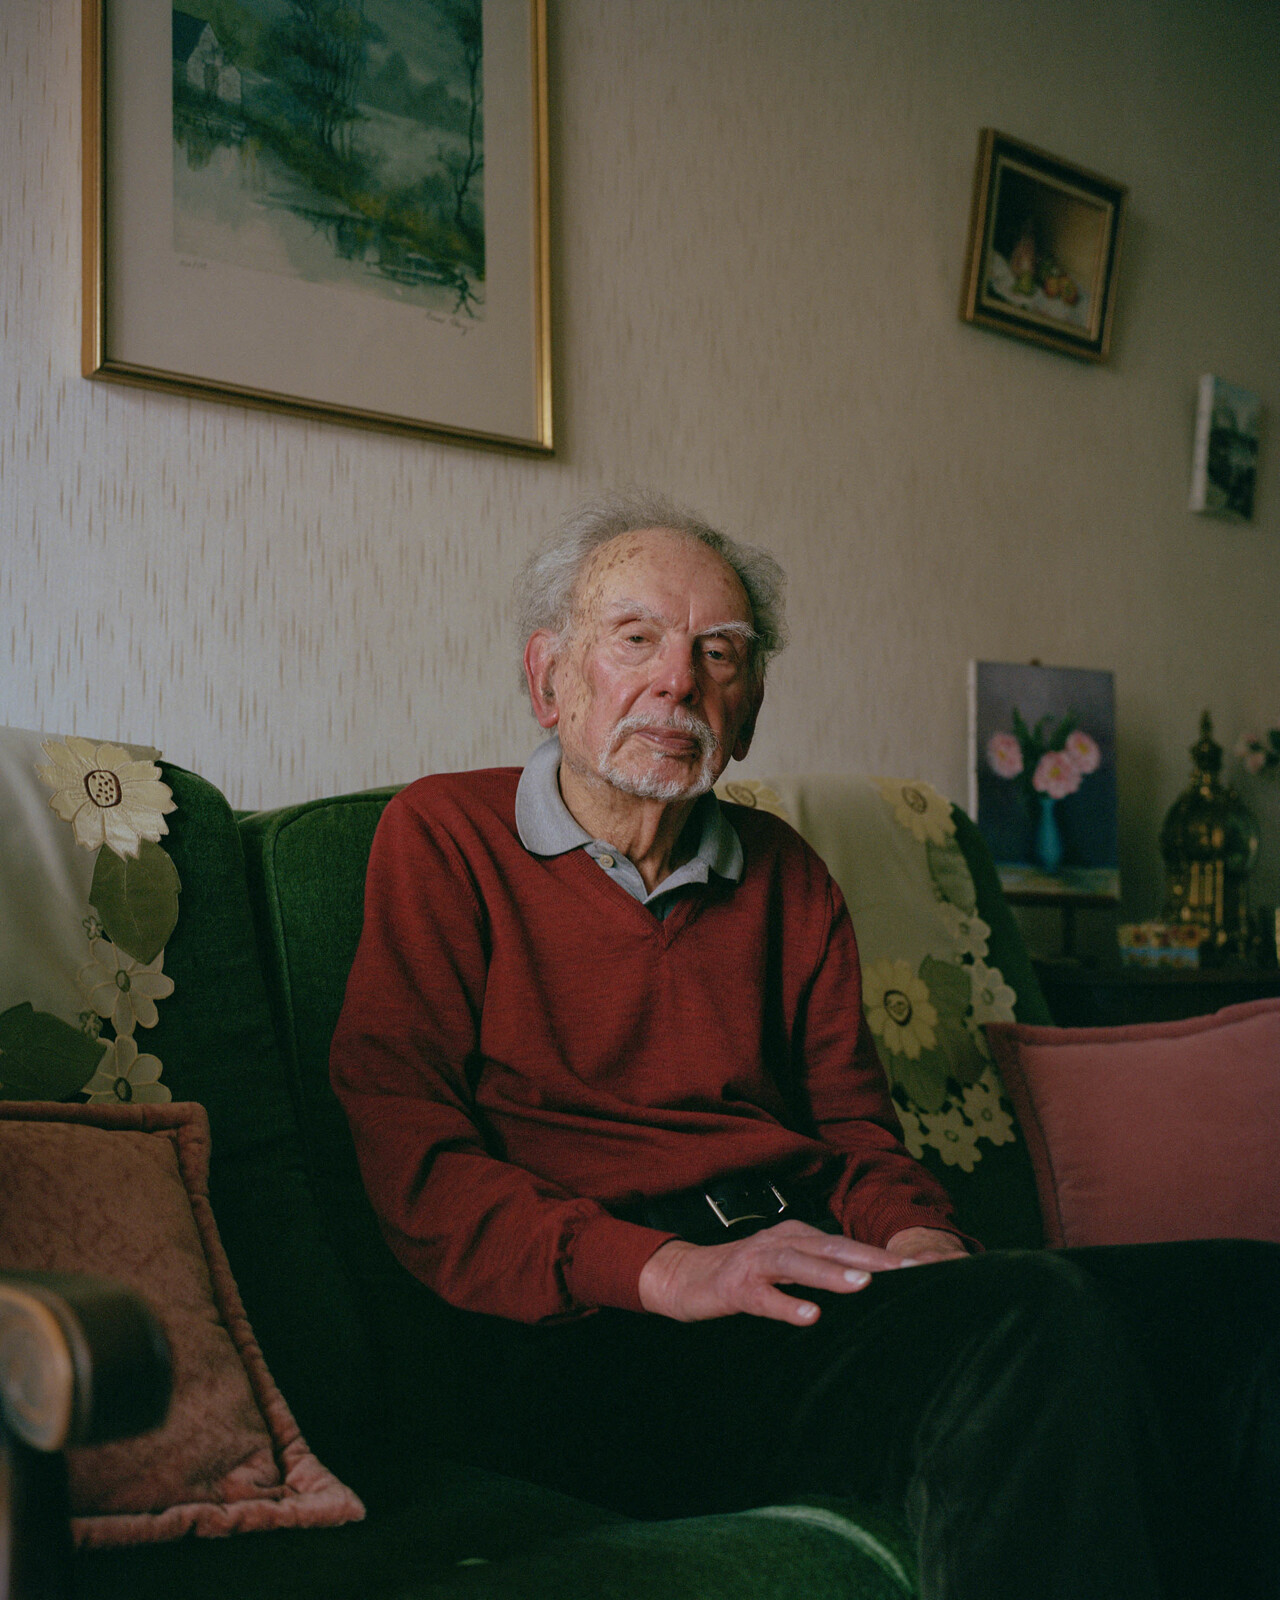 Carlo Lombardi est allé à la rencontre des foyers touchés par la Seconde Guerre mondiale.